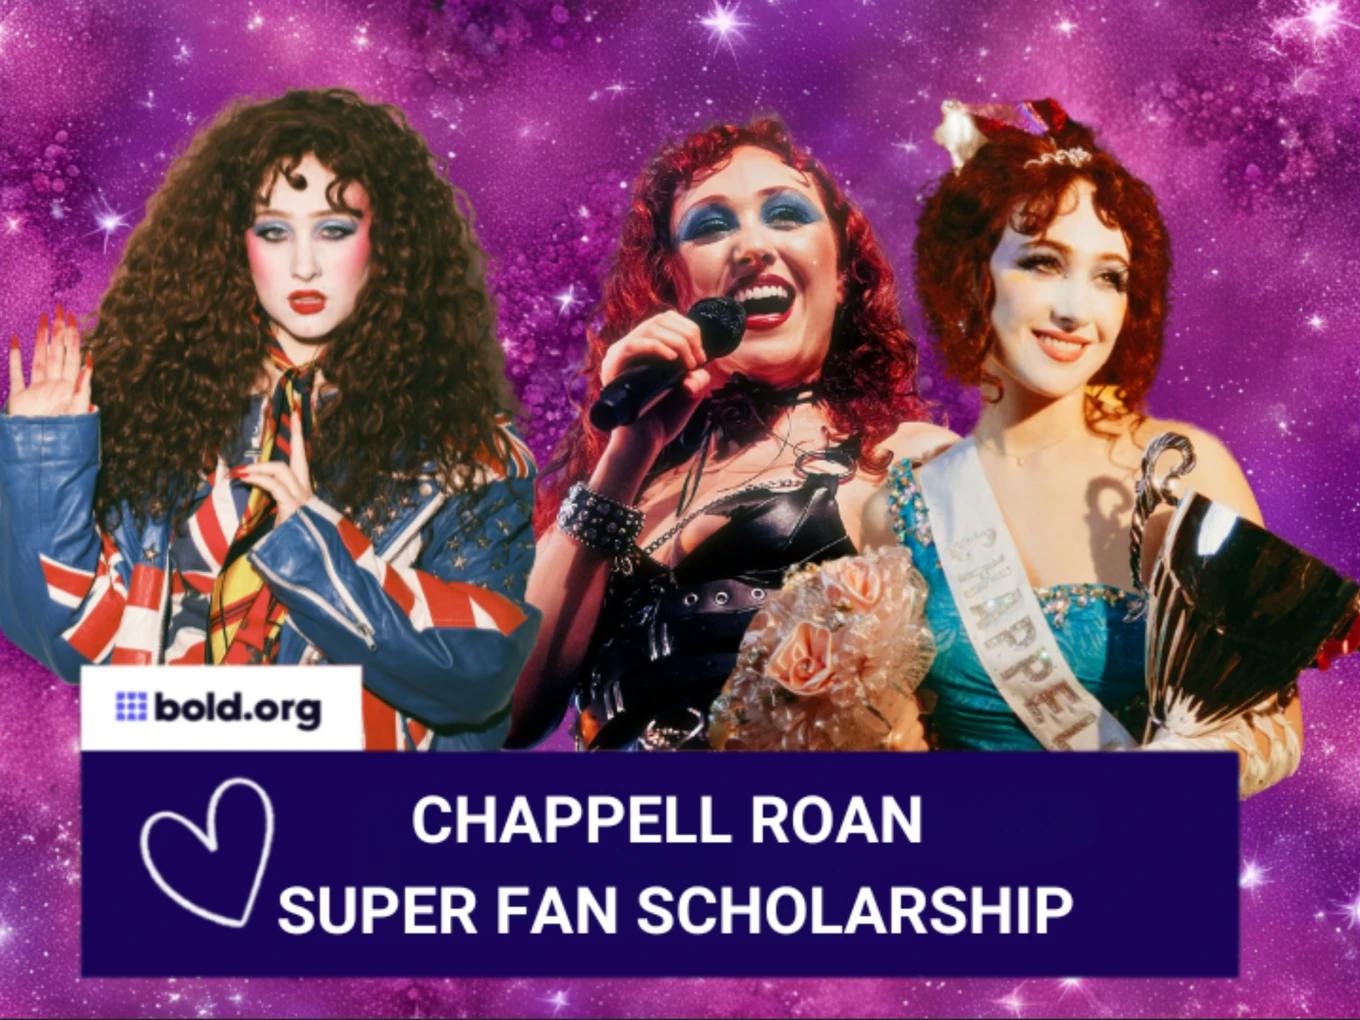 Chappell Roan Superfan Scholarship